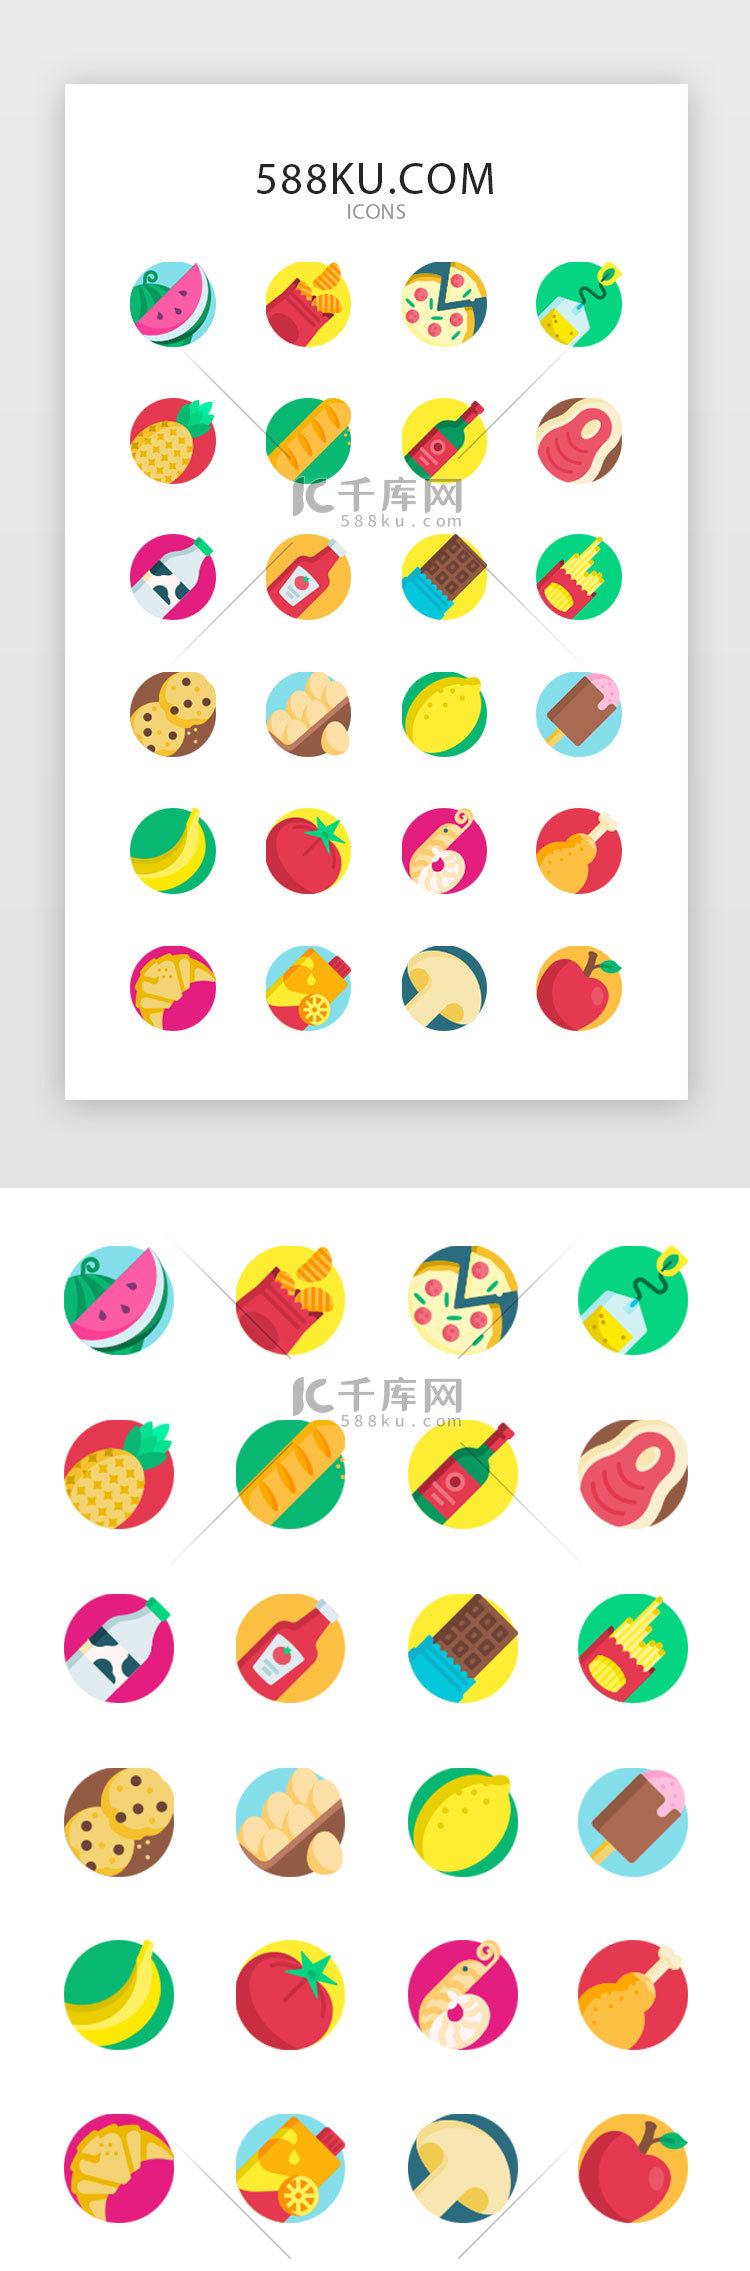 彩色创意美食生鲜图标icon